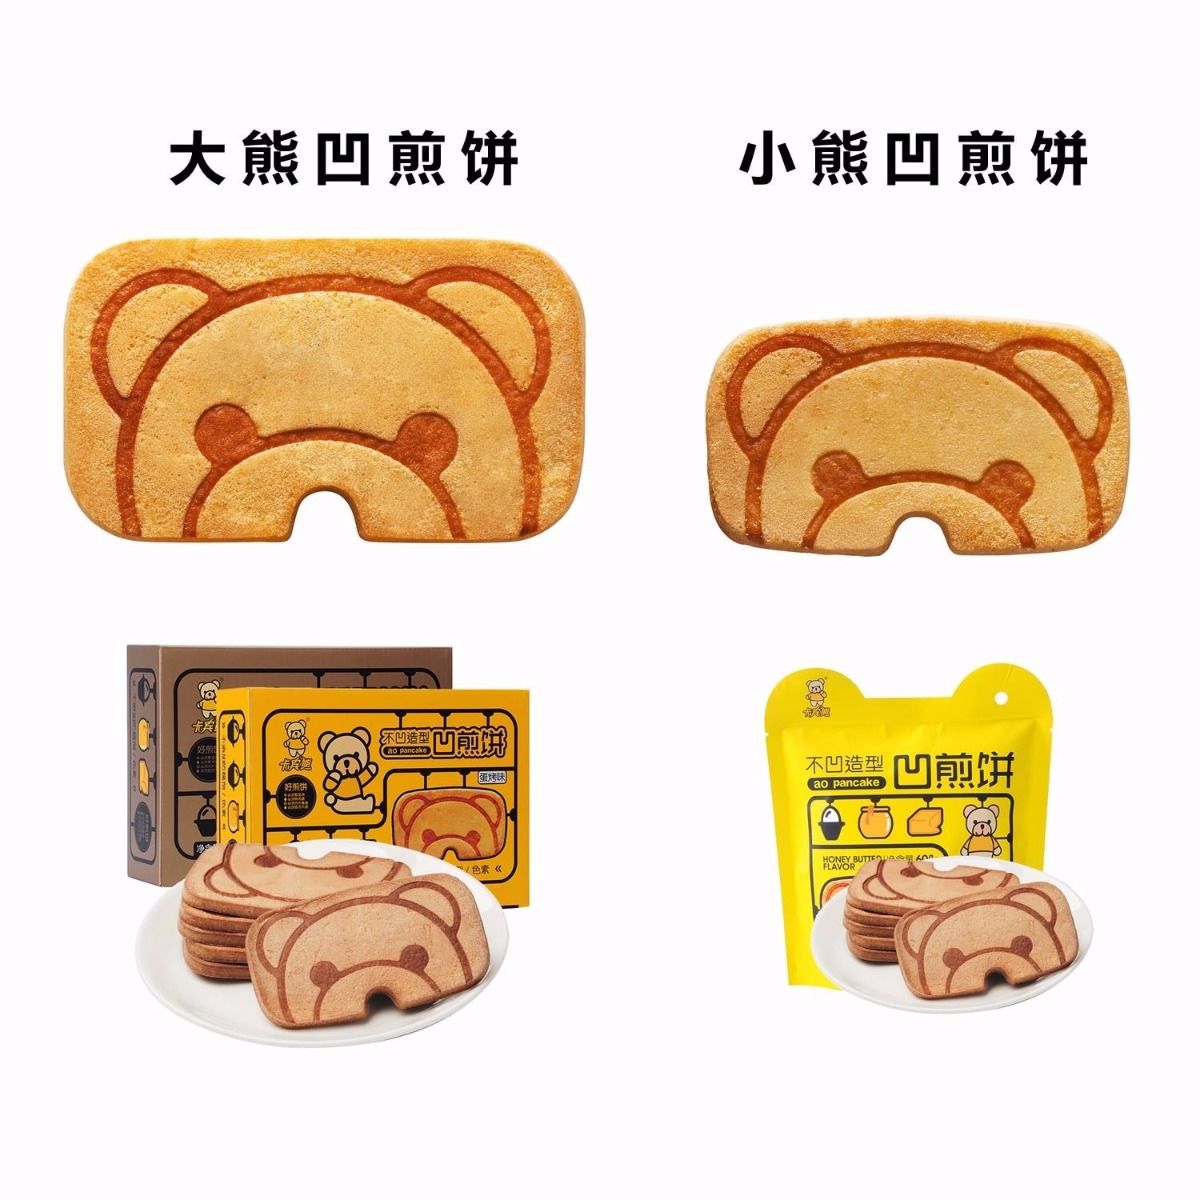 【10万好评好吃疯了】网红零食煎饼卡宾熊儿童饼干营养早餐